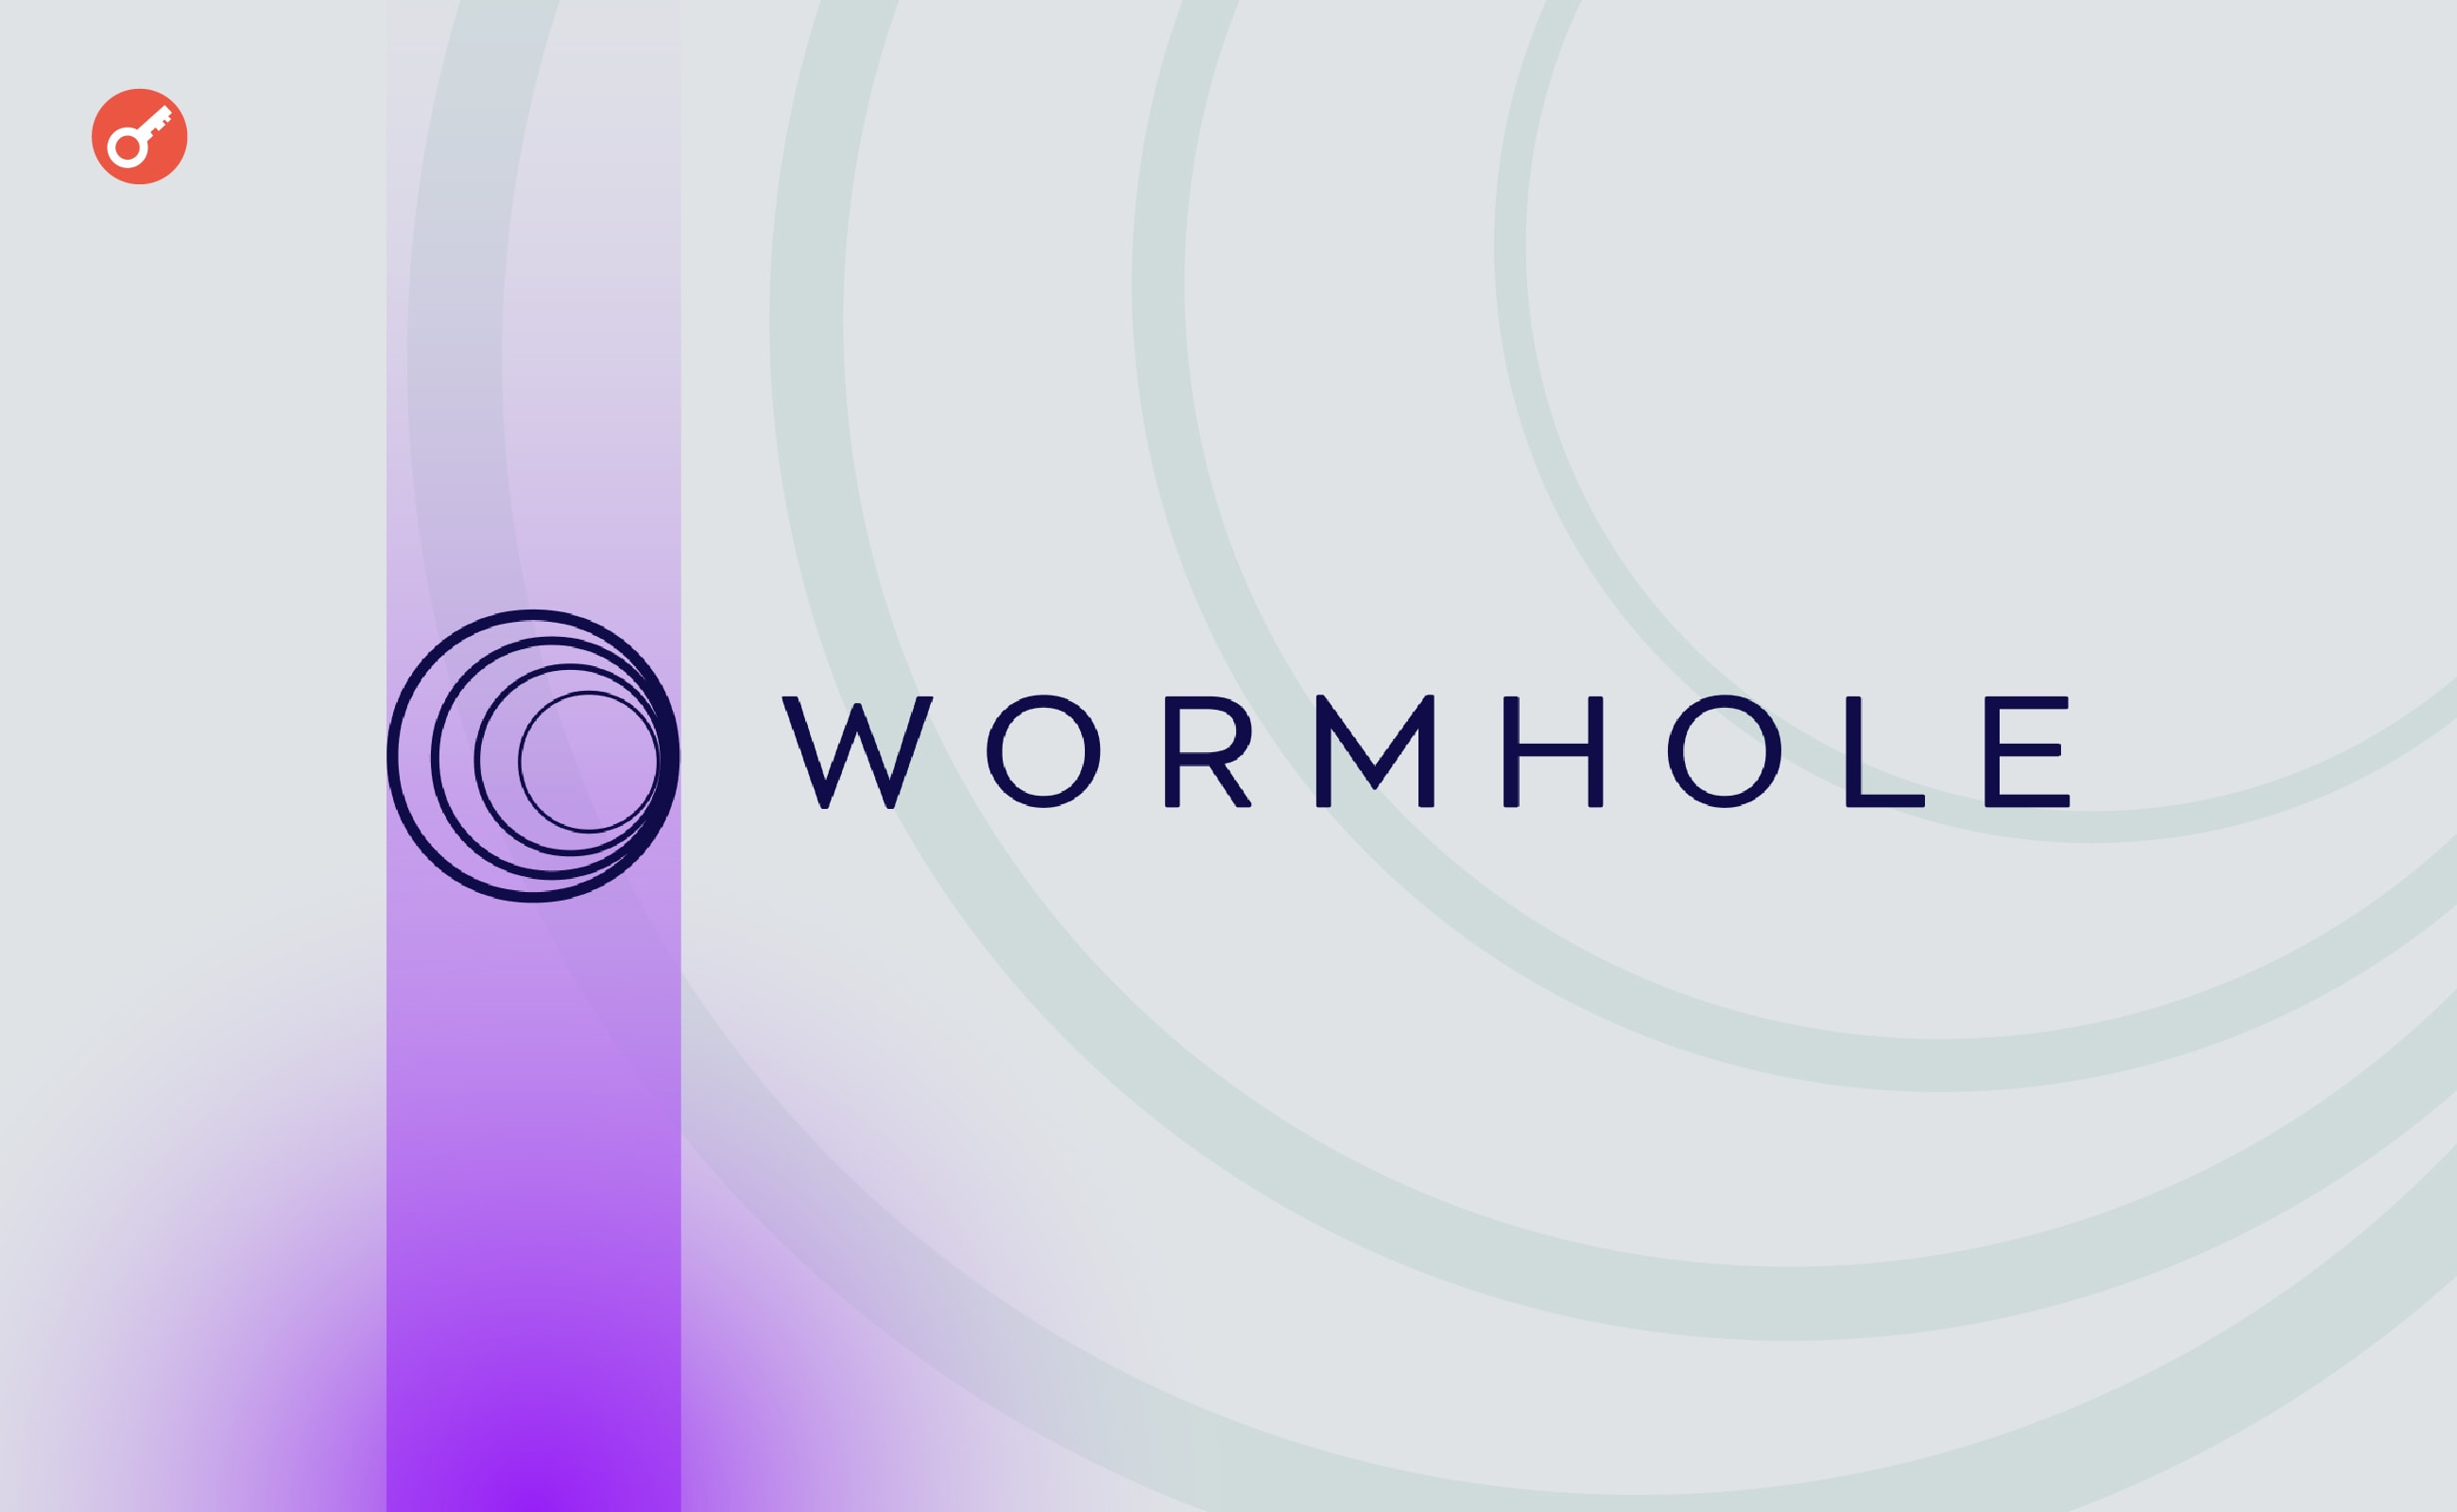 Команда Wormhole оголосила про роздачу 617 млн токенів учасникам аірдропу. Головний колаж новини.